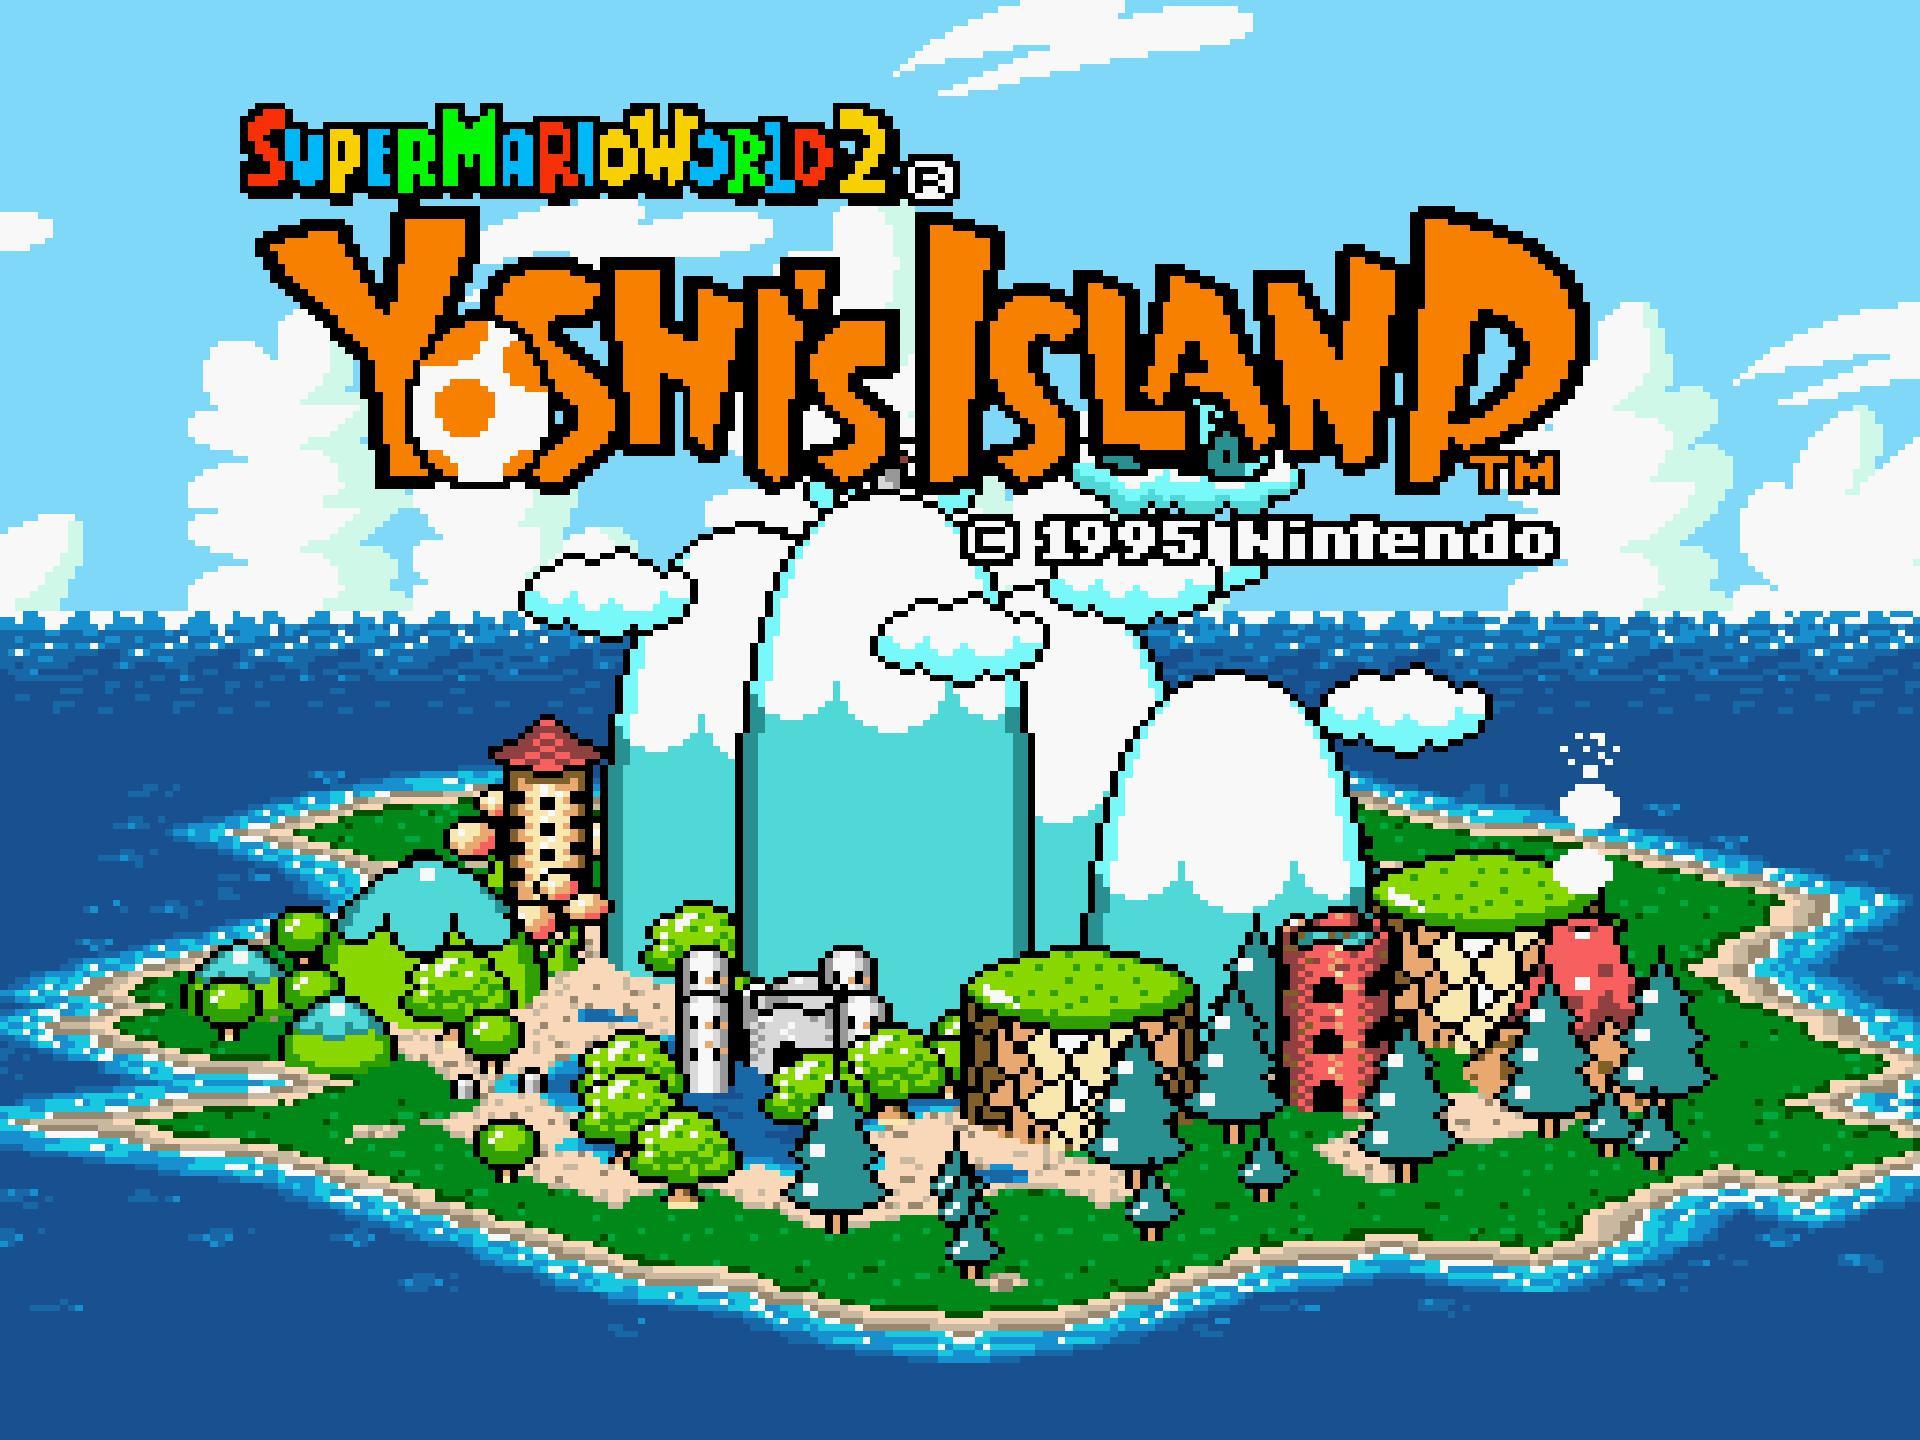 Yoshi island 2. Super Mario World 2 - Yoshi's Island Snes. Super Mario World 2 Yoshis Island. Mario Yoshi Island. Super Mario Yoshi Island.